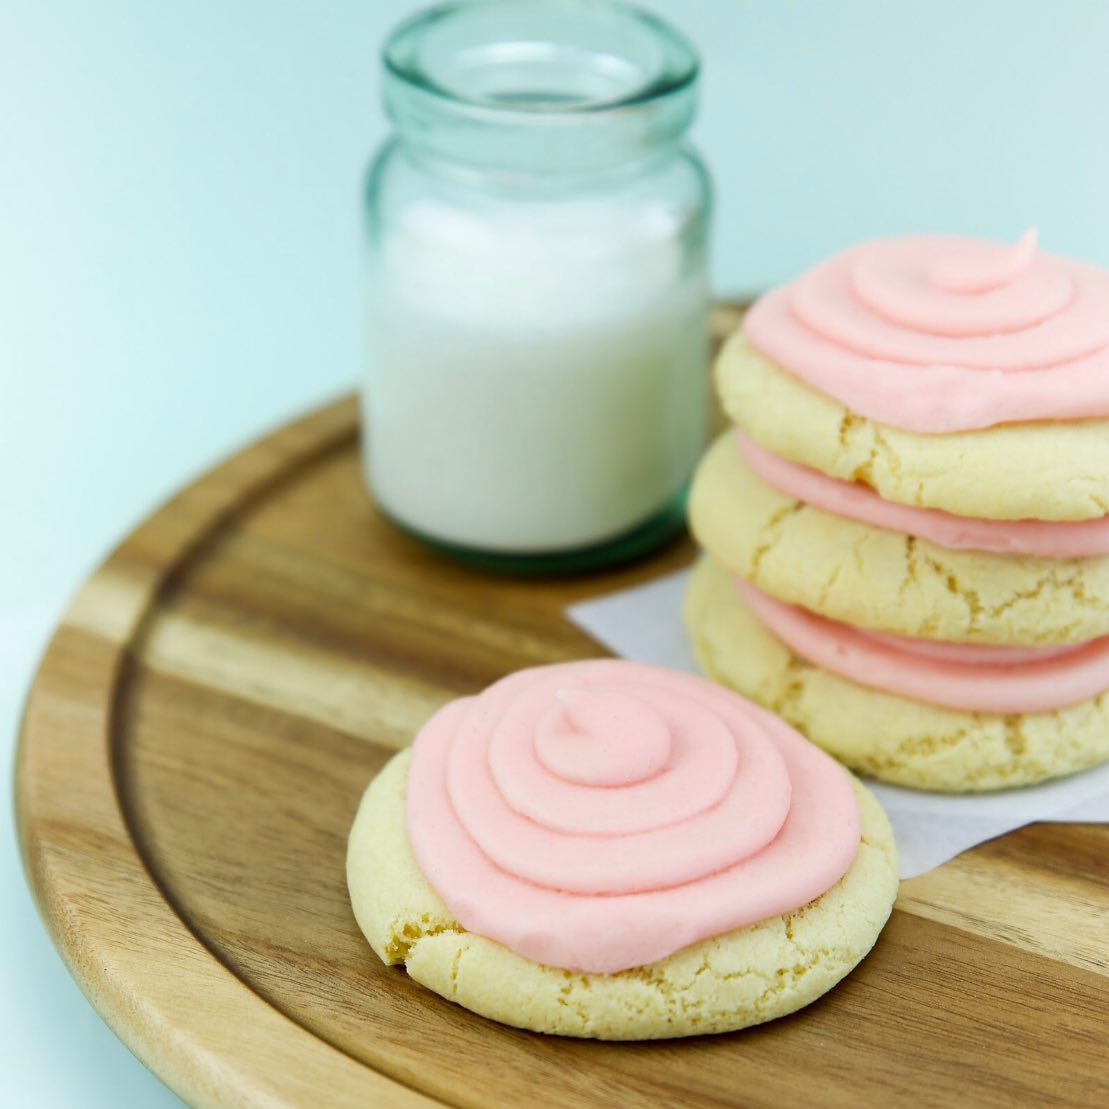 Pink Sugar Cookie